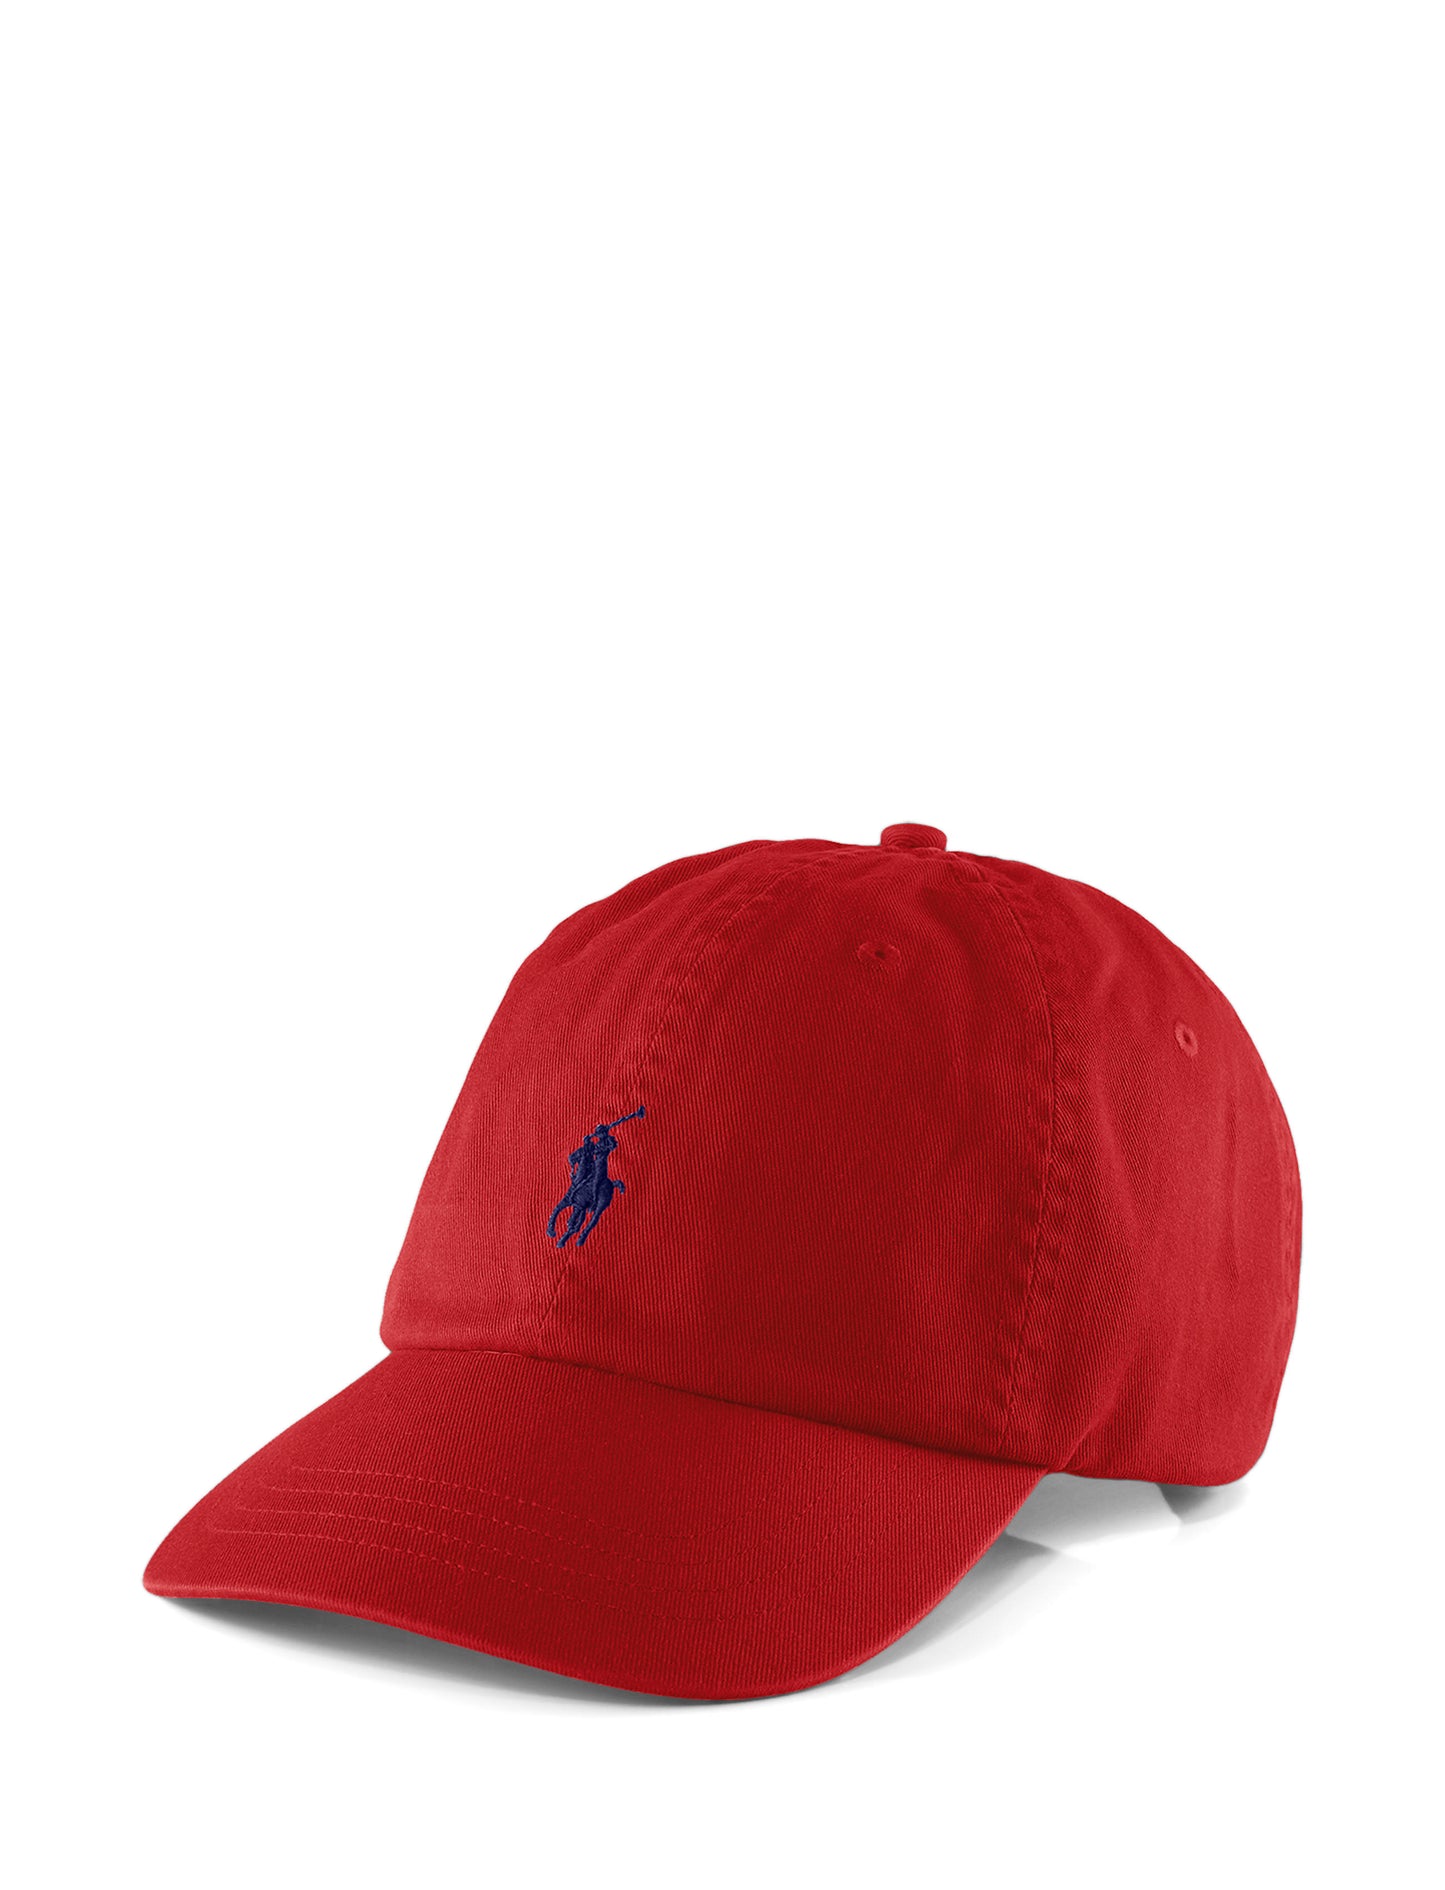 Polo Ralph Lauren Chino Baseball Cap Red